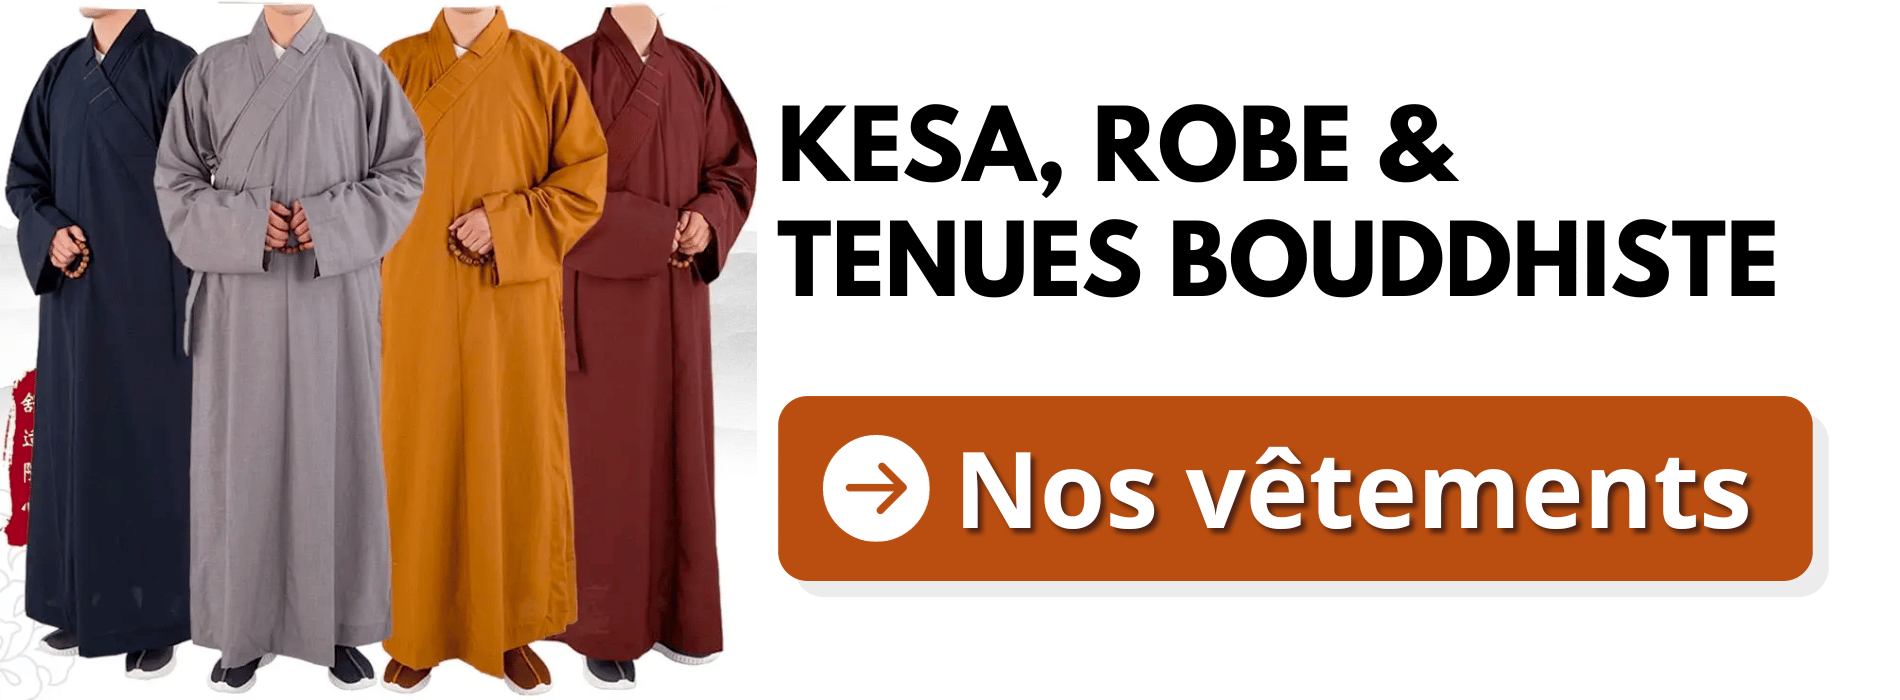 Kesa-Robe-trajes-Budista